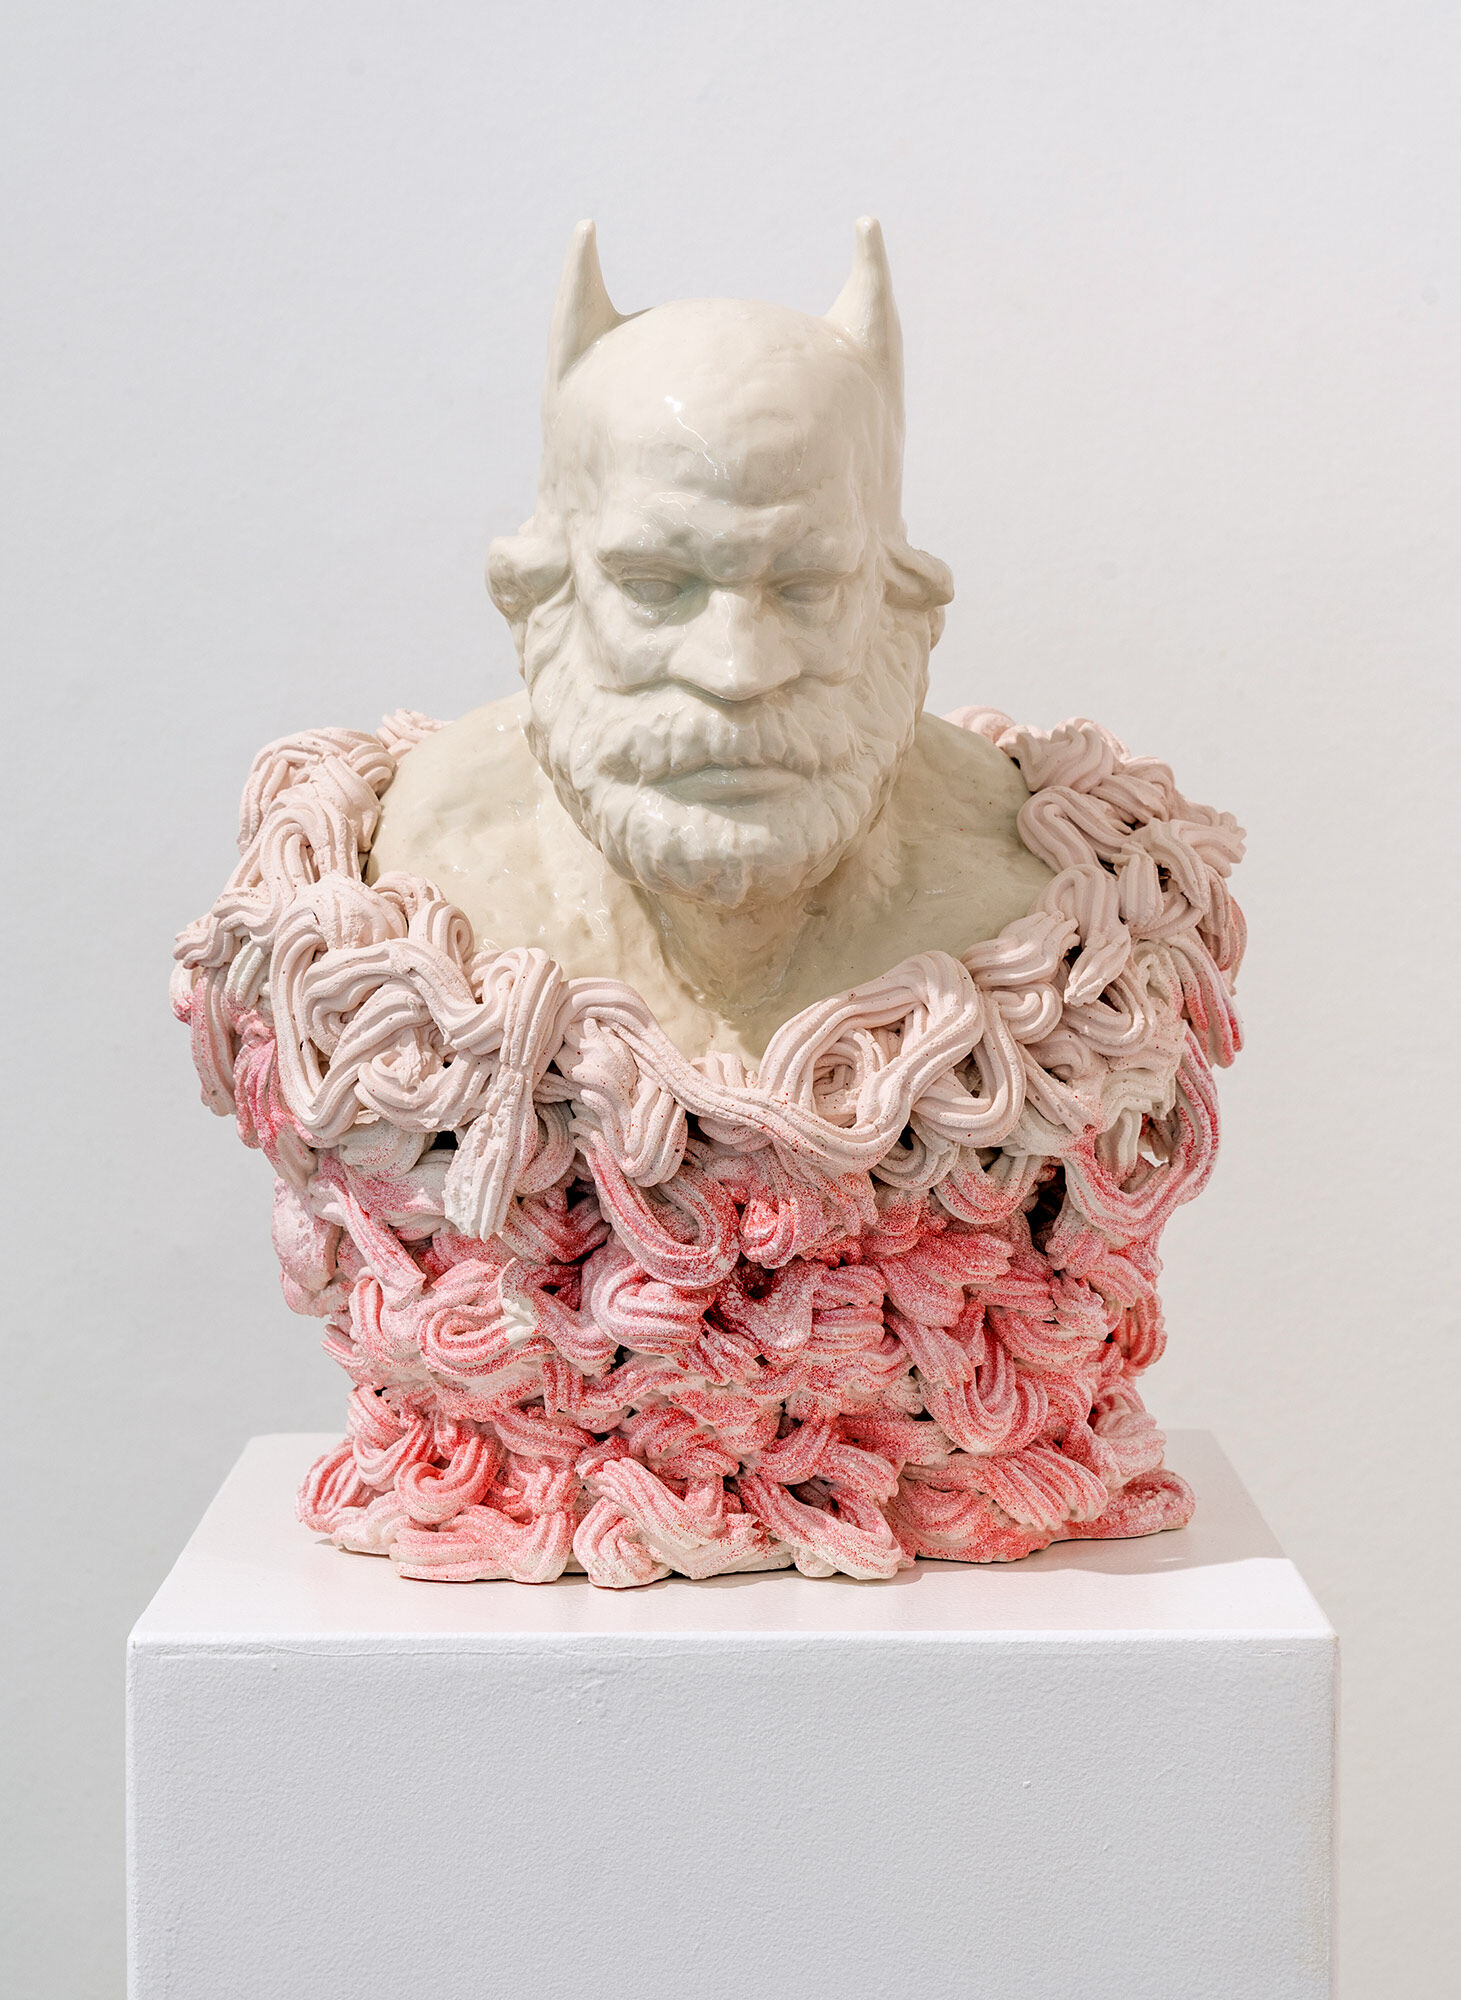 Sculpture "B. Marx No. 1" (2015), porcelain by Hannes Uhlenhaut